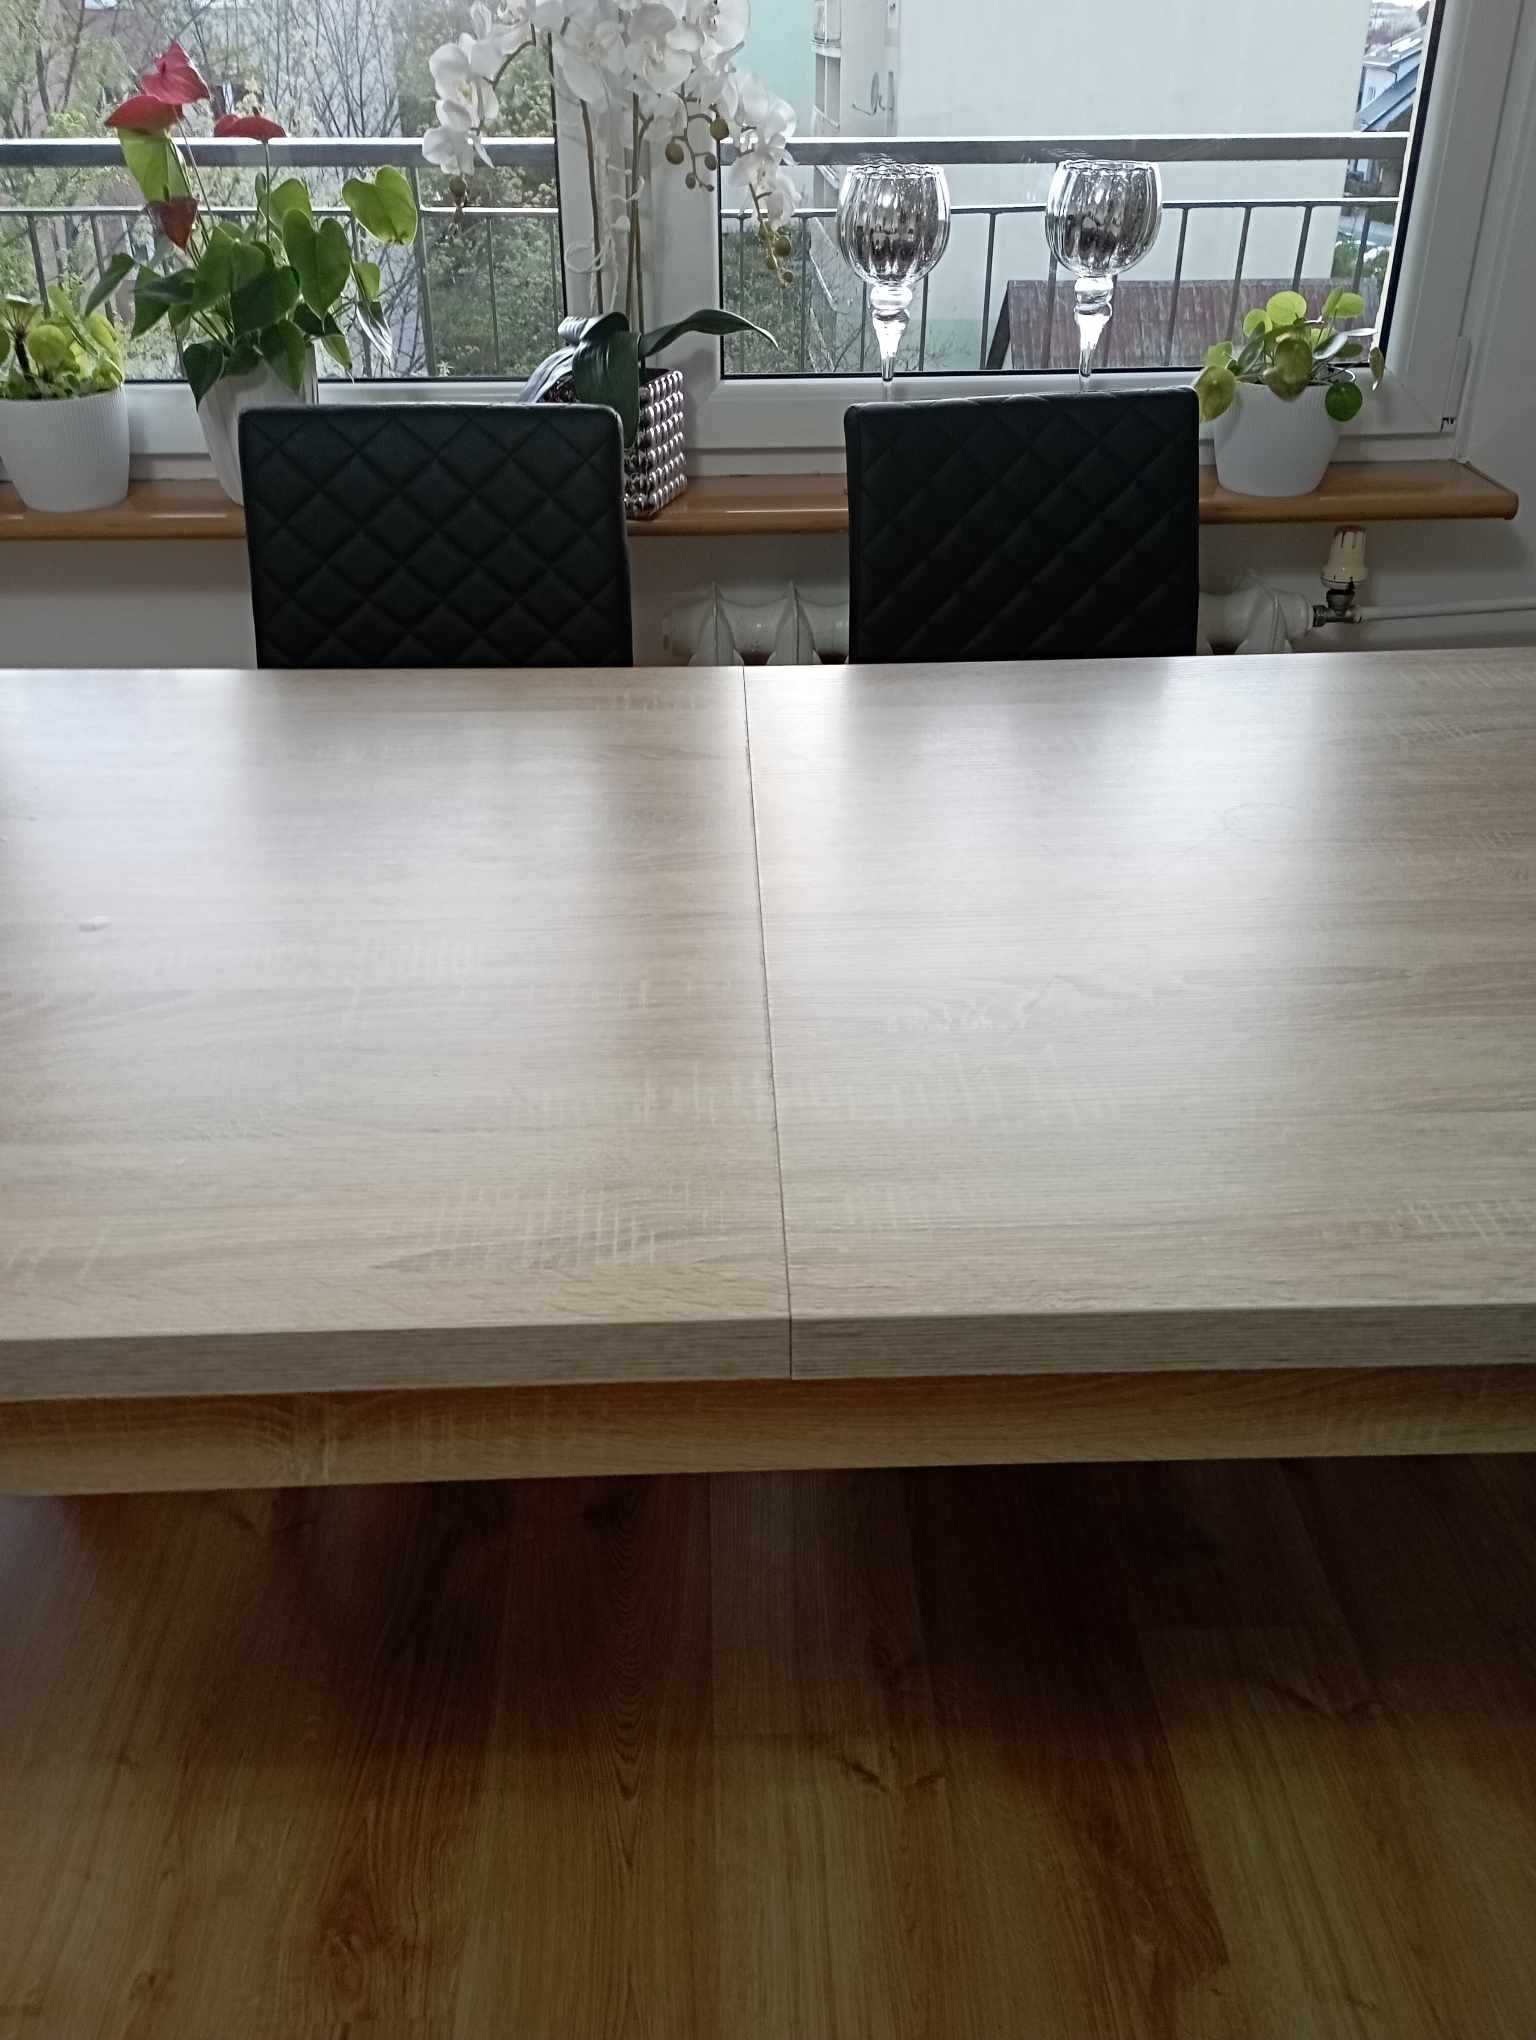 Stół rozkładany 160x90